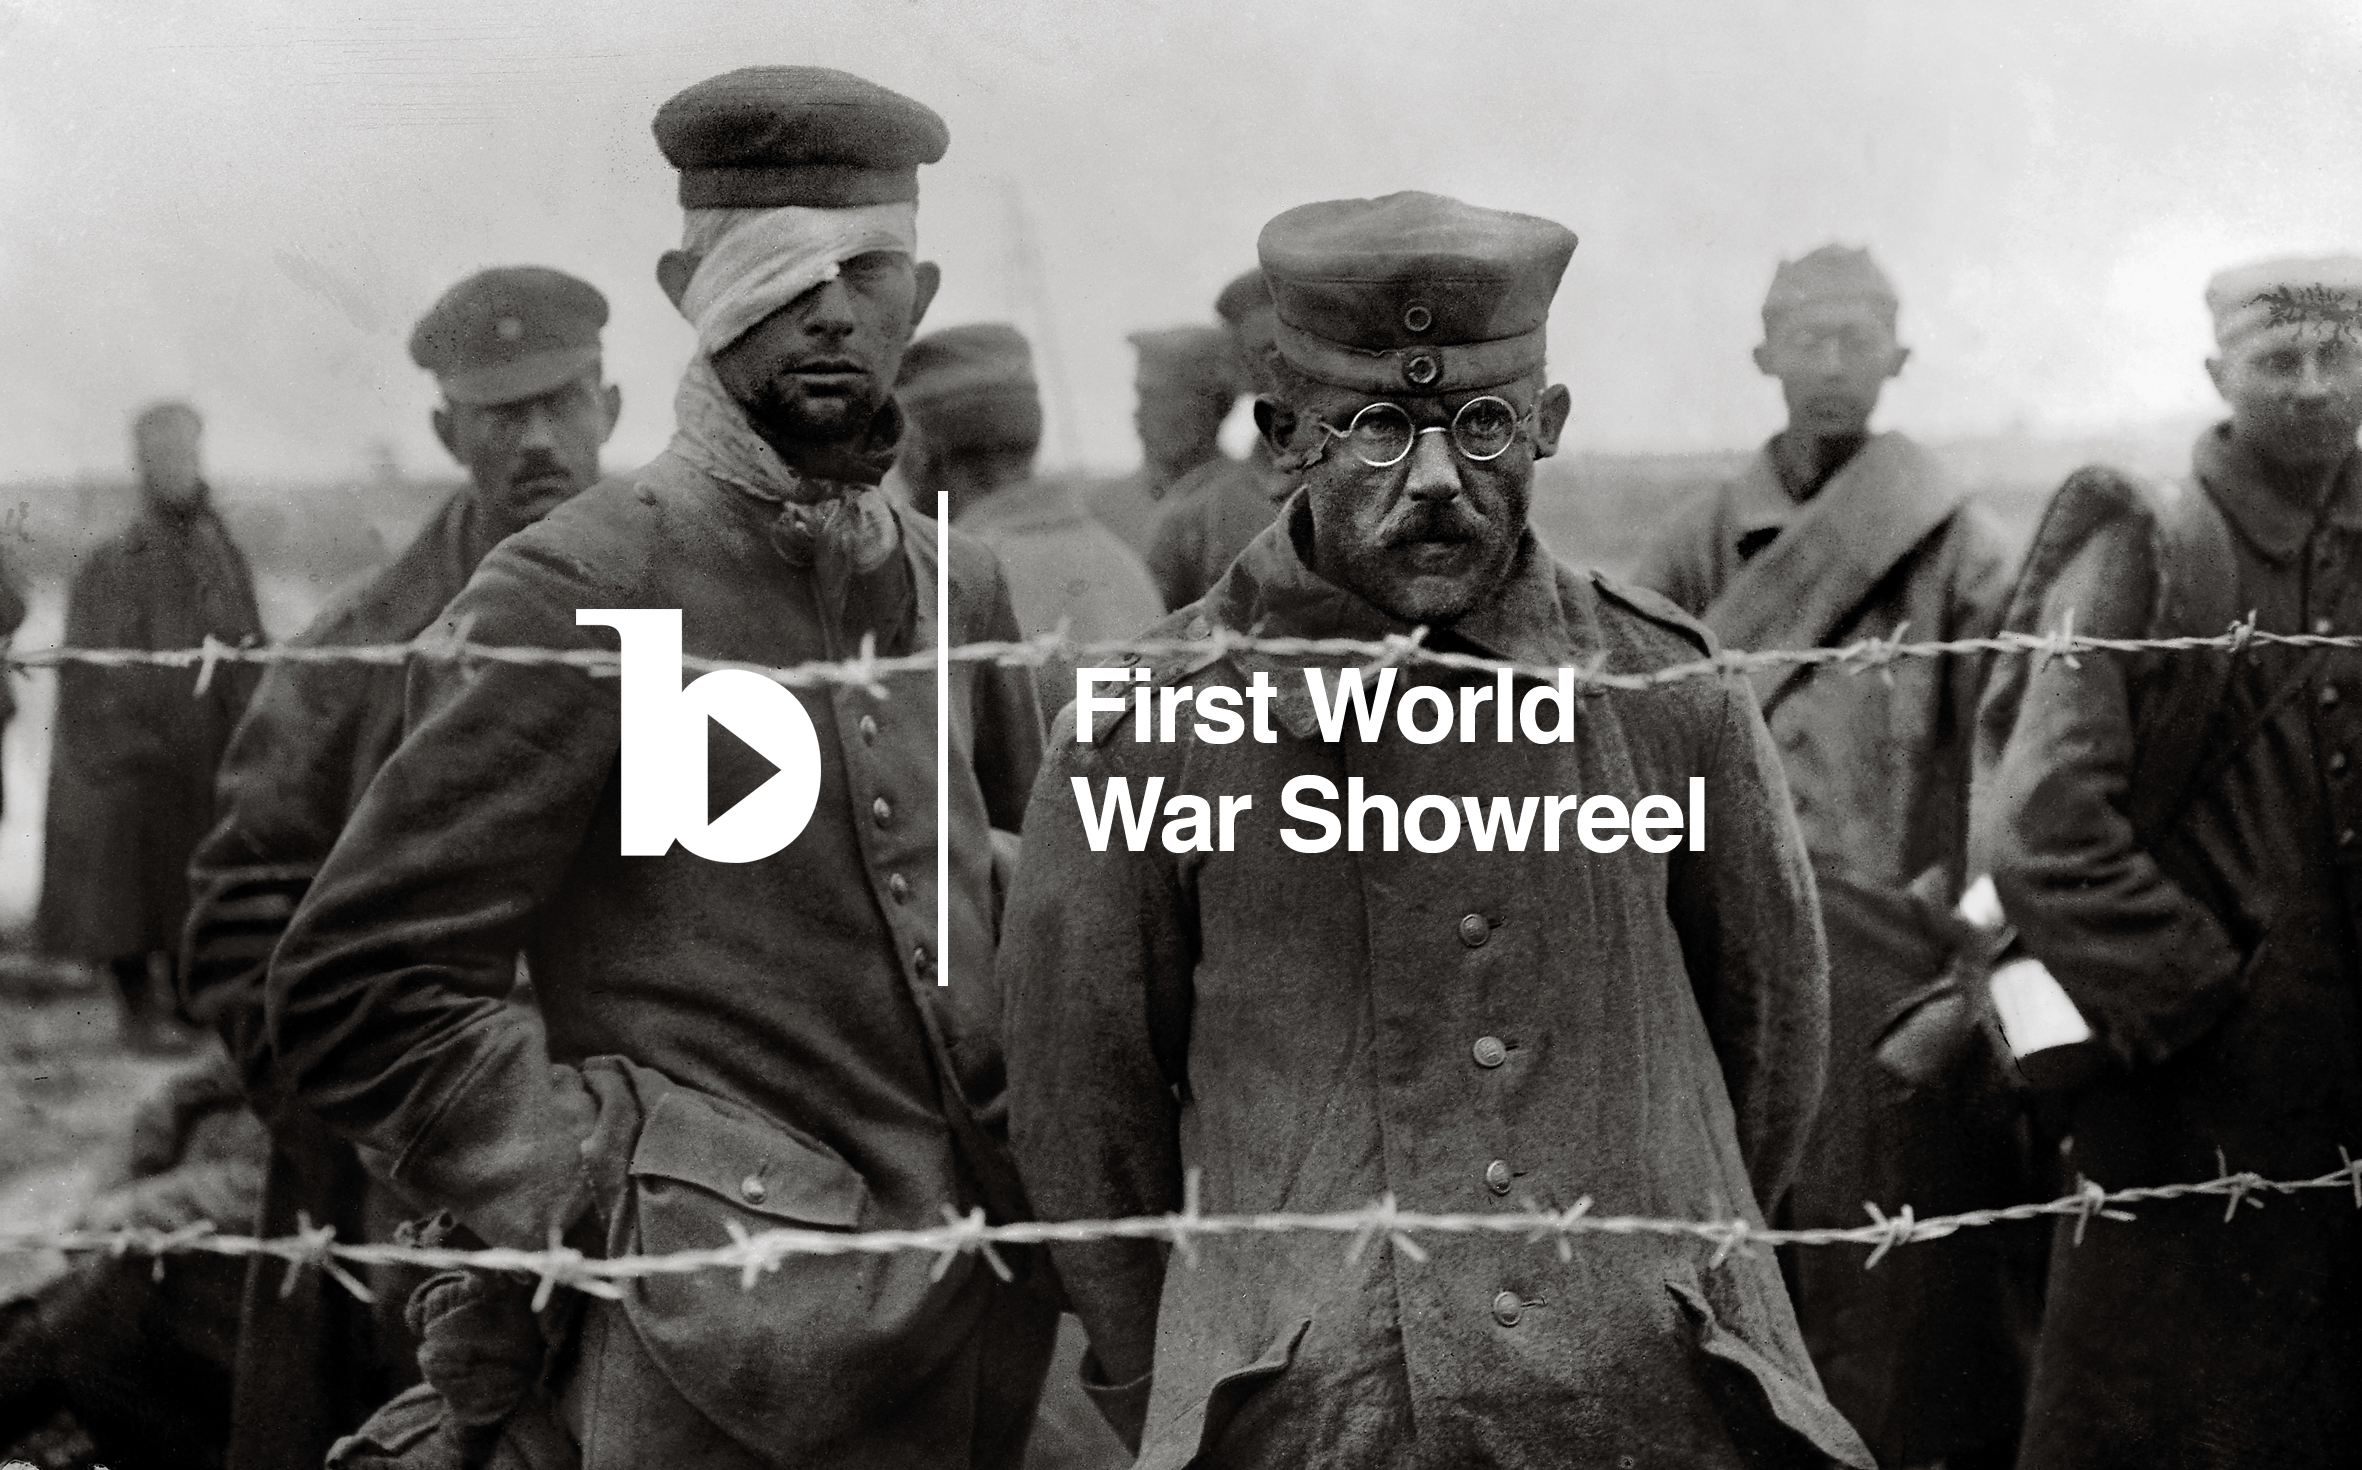 Cliquez sur l'image pour lancer la séquence de la première guerre mondiale